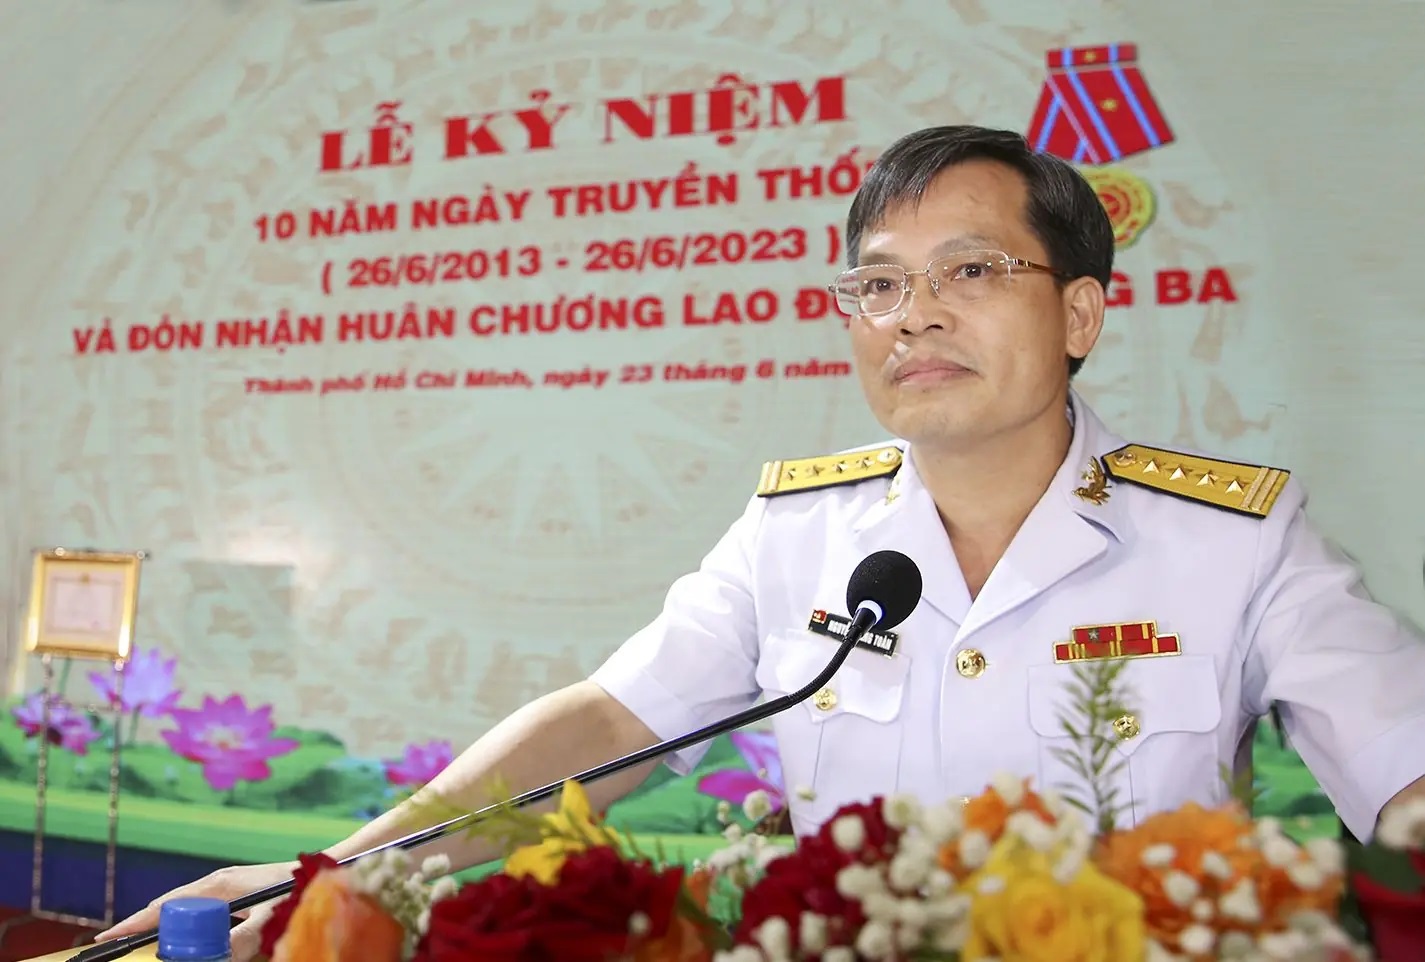 Đại tá Nguyễn Năng Toàn phát biểu tại buổi lễ.